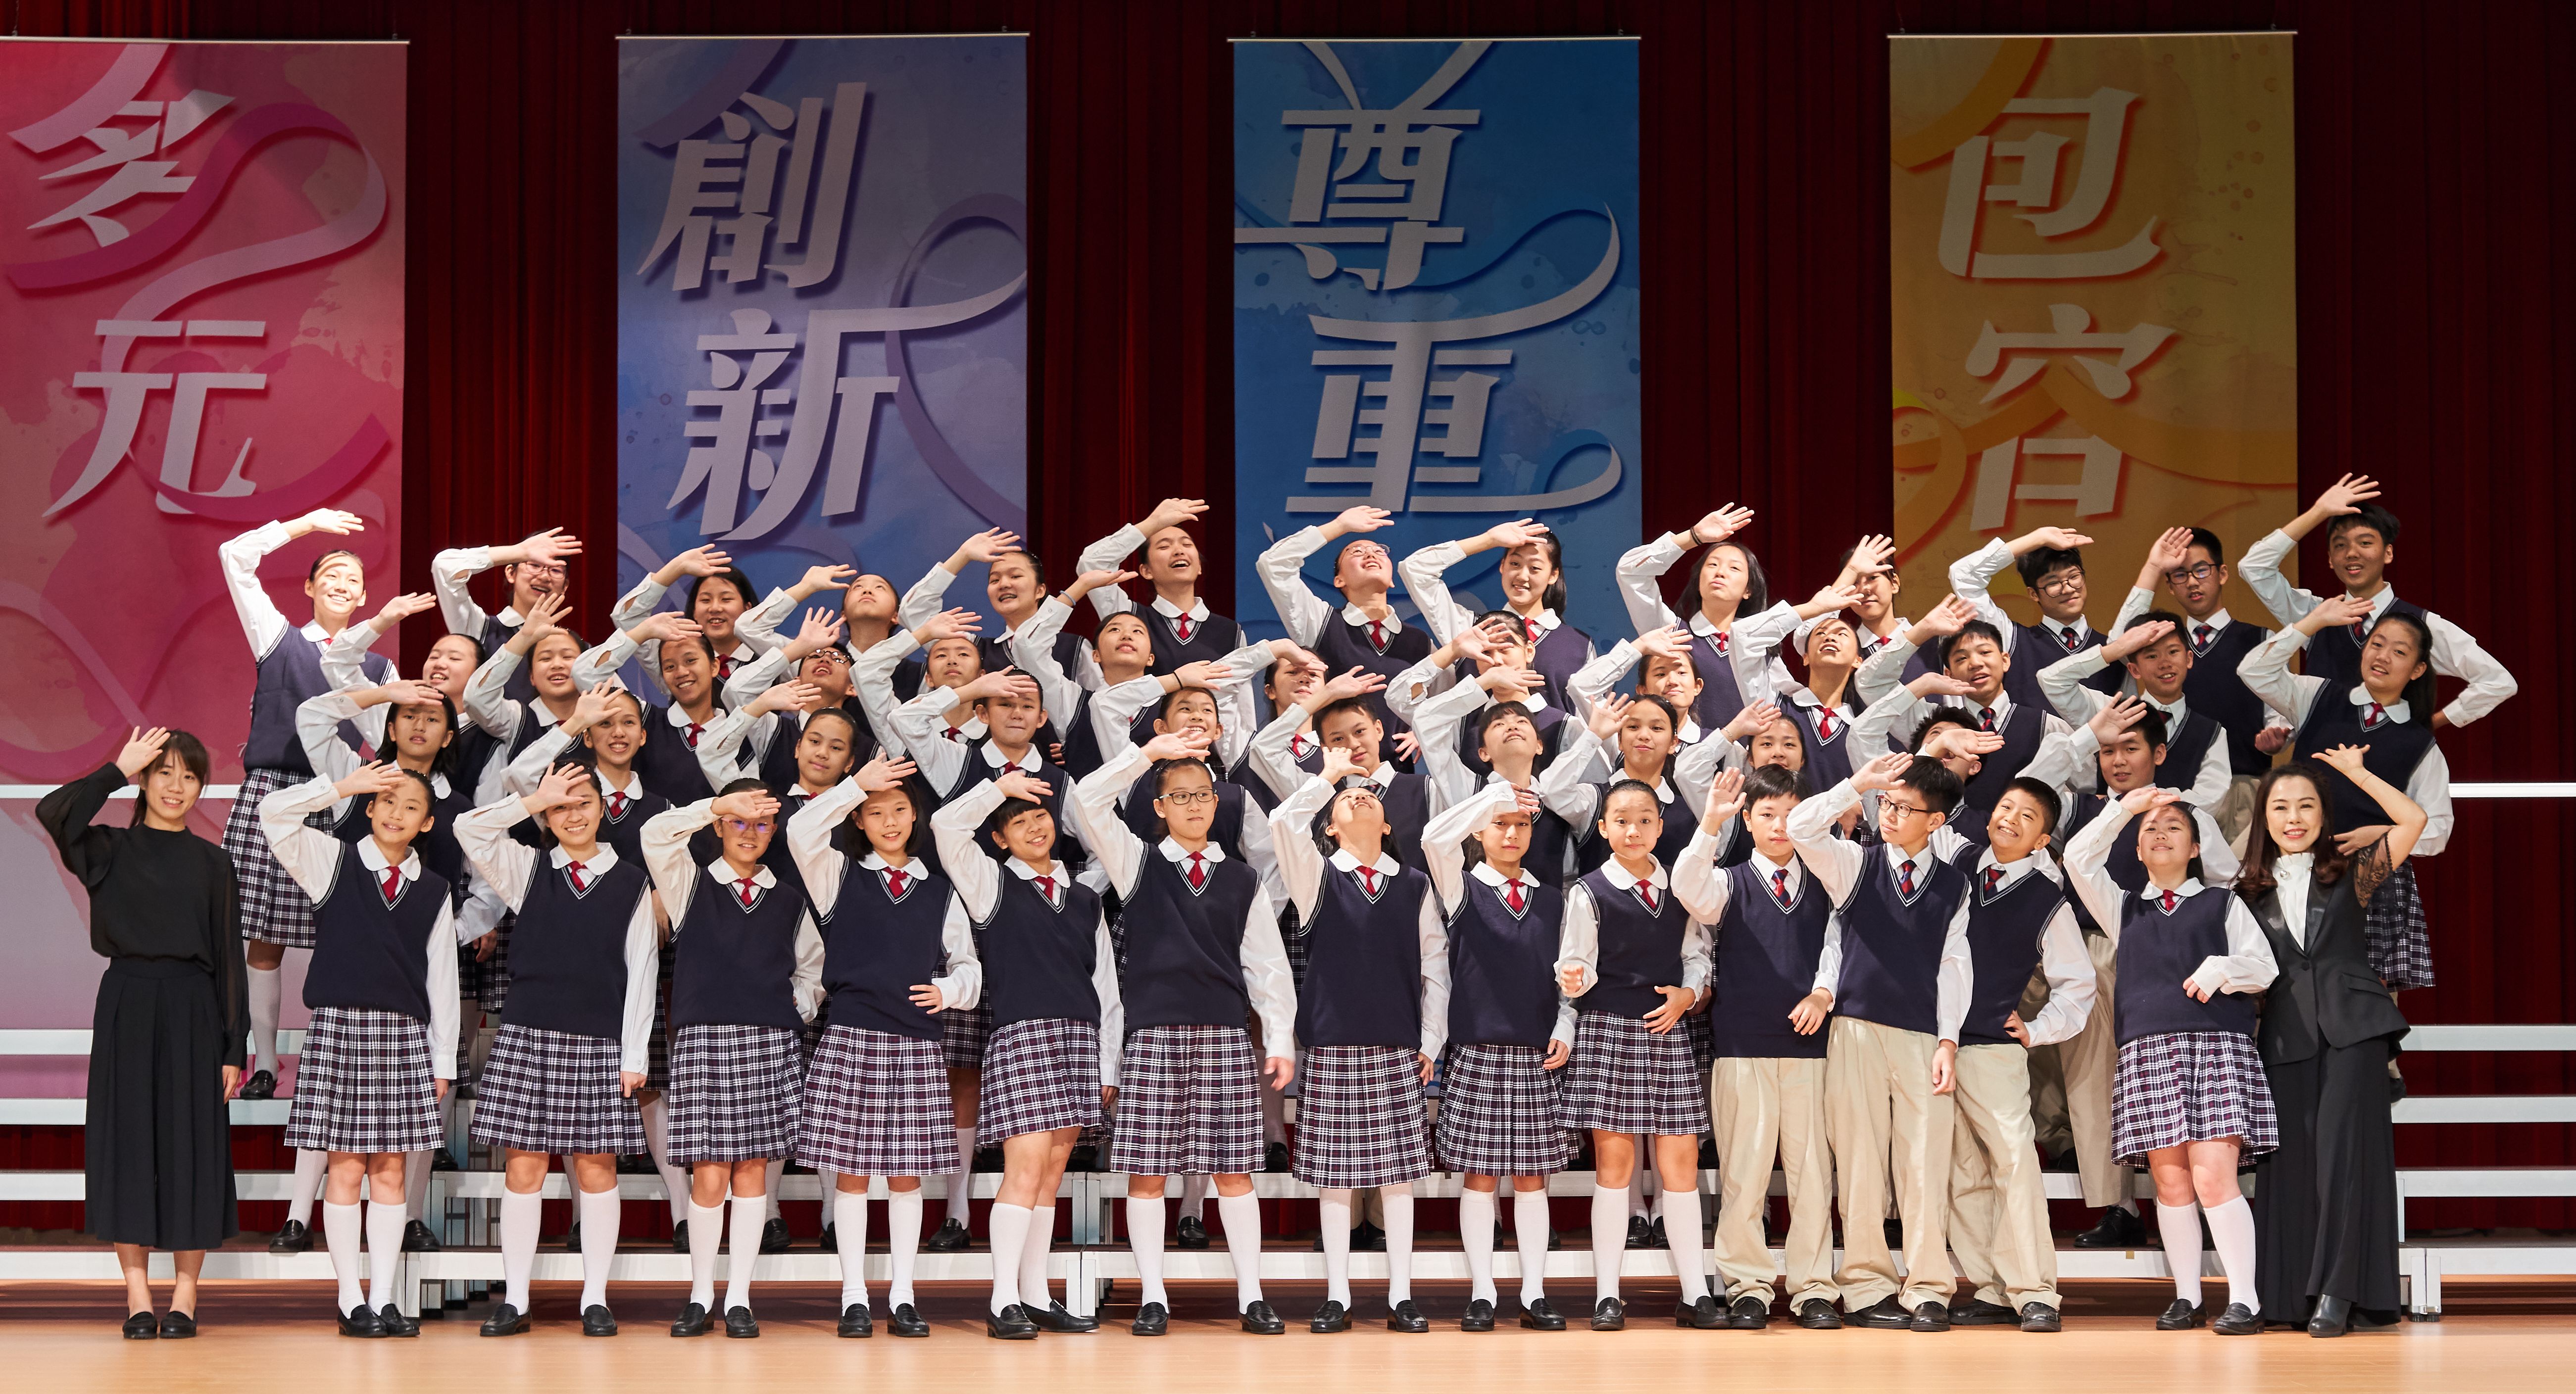 臺北市學生音樂比賽-中學合唱團